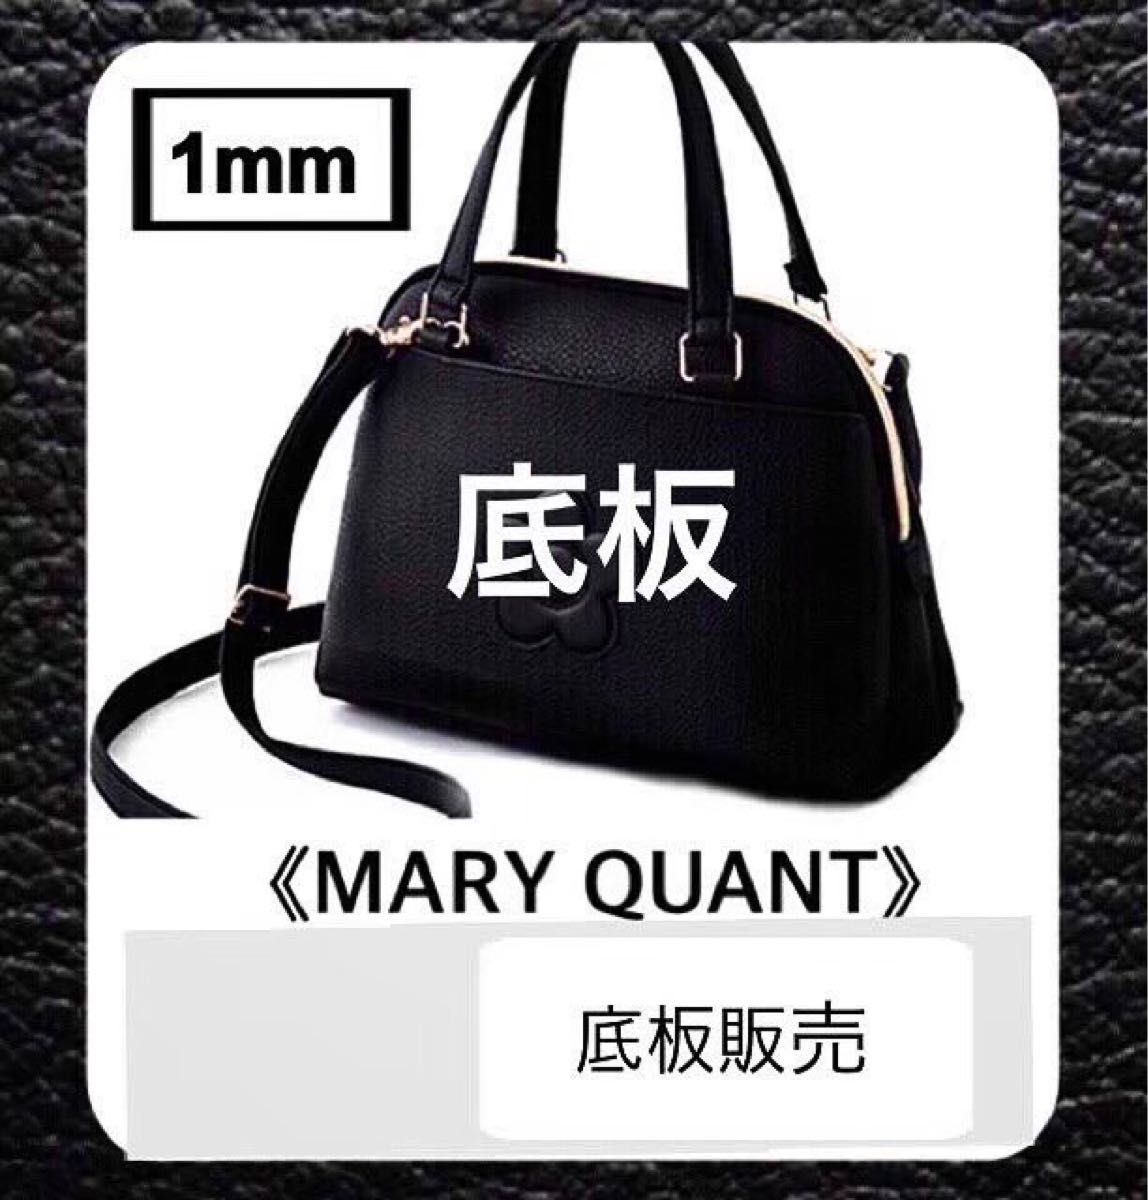 【底板のみ販売】MARY QUANT  マリークワント  ショルダーバッグ用 1